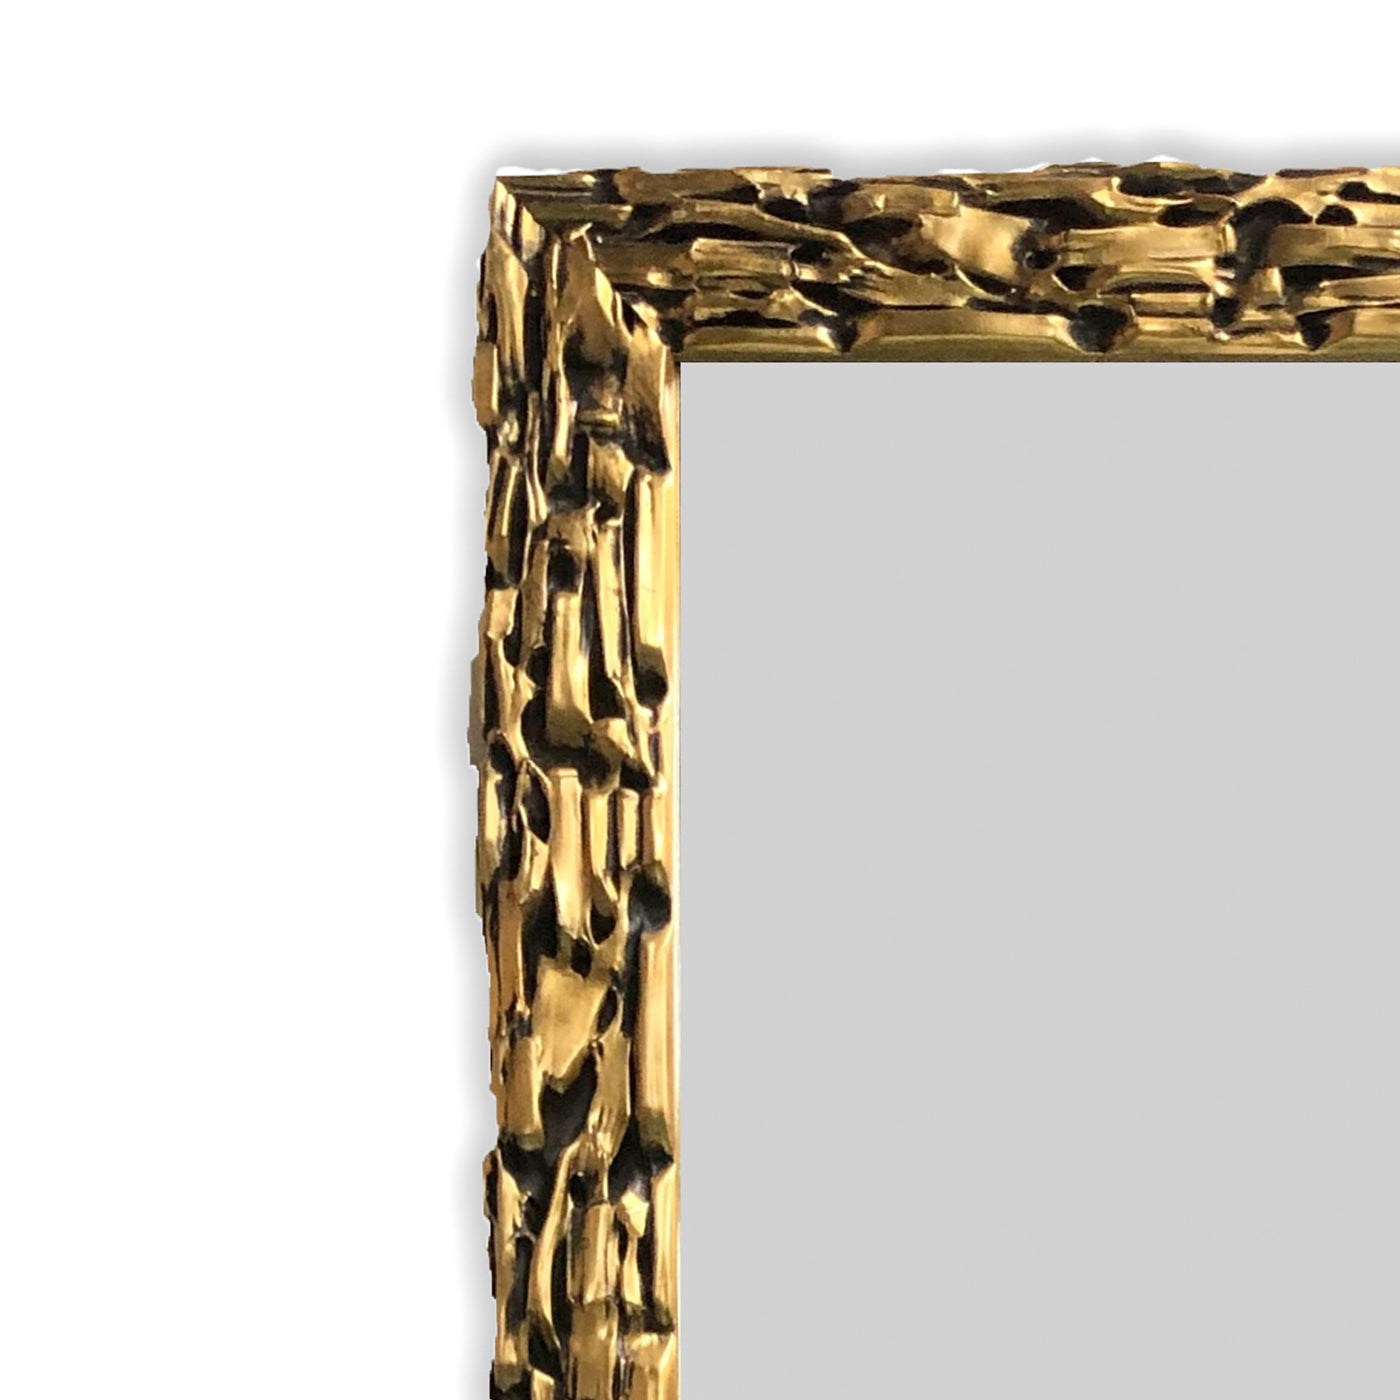 Specchio da parete LINZ oro